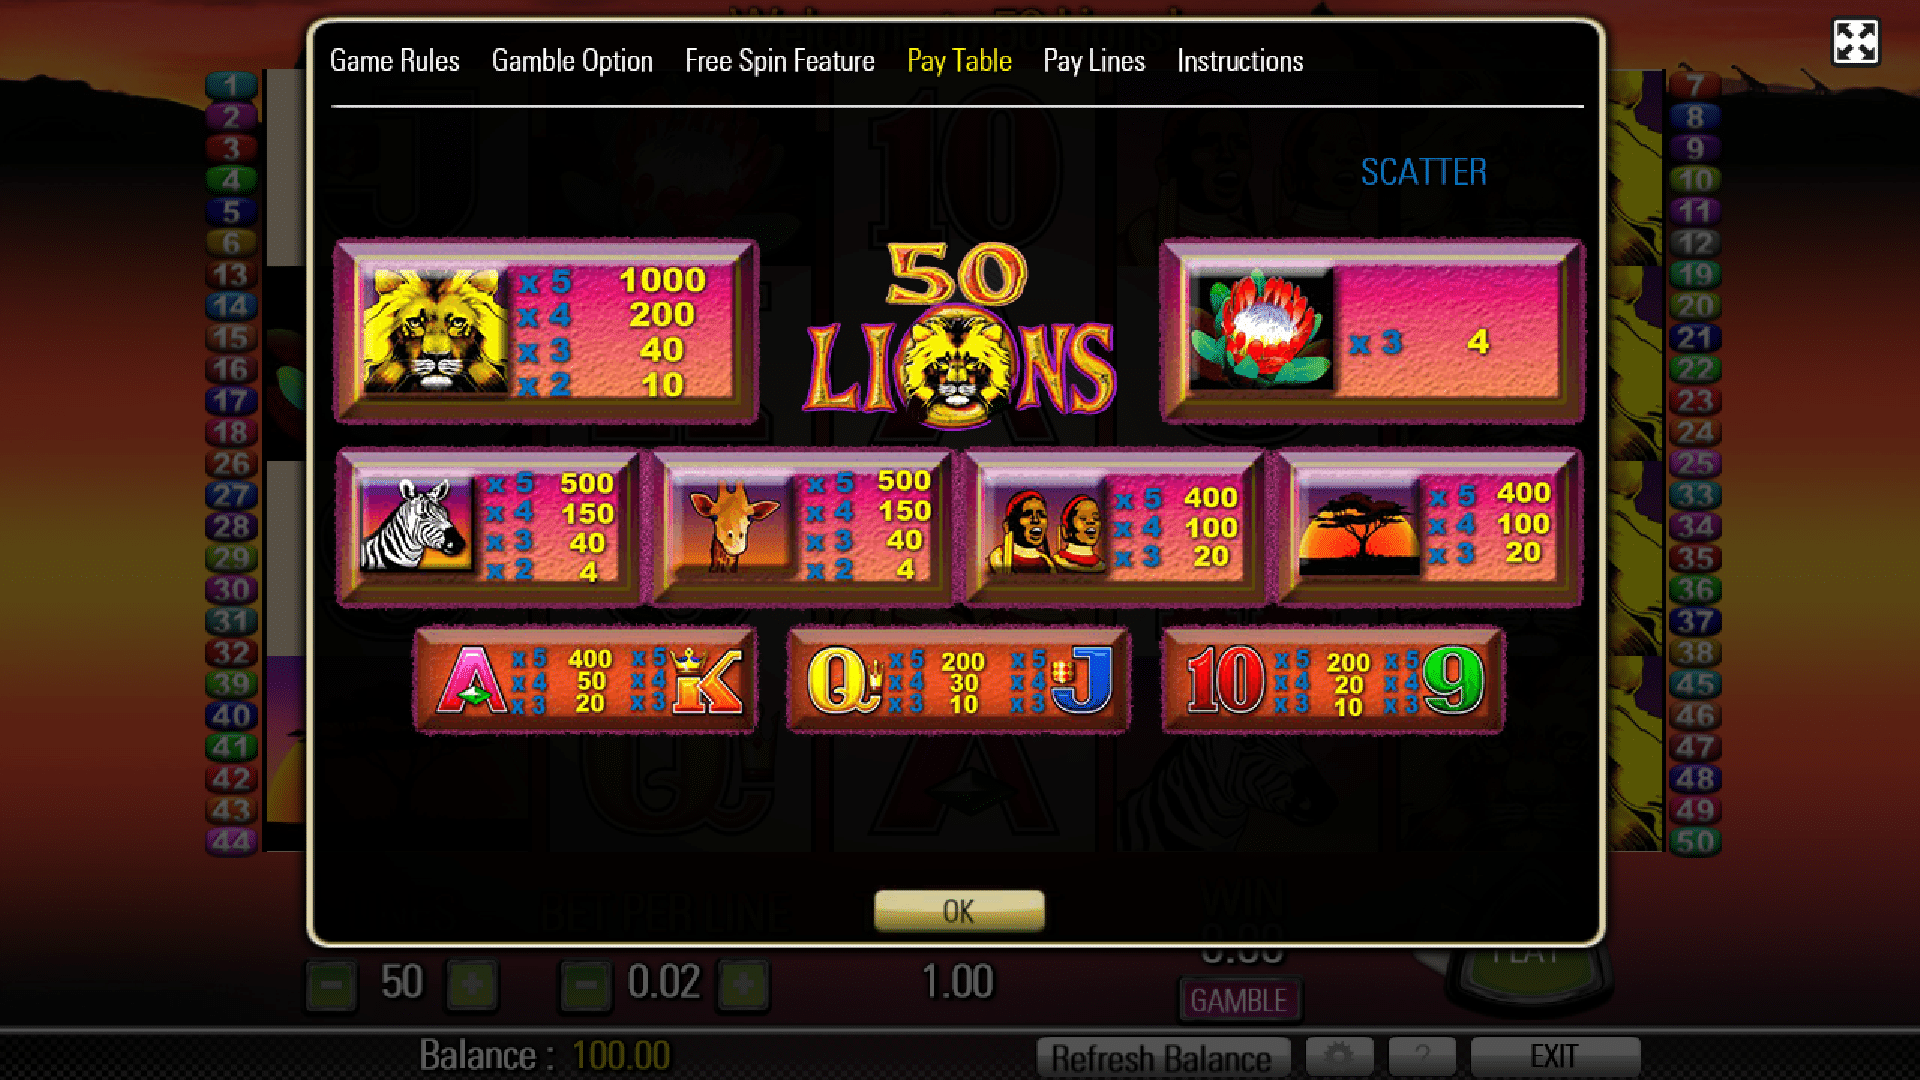 Tabella Pagamenti Slot Gratis 50 Lions